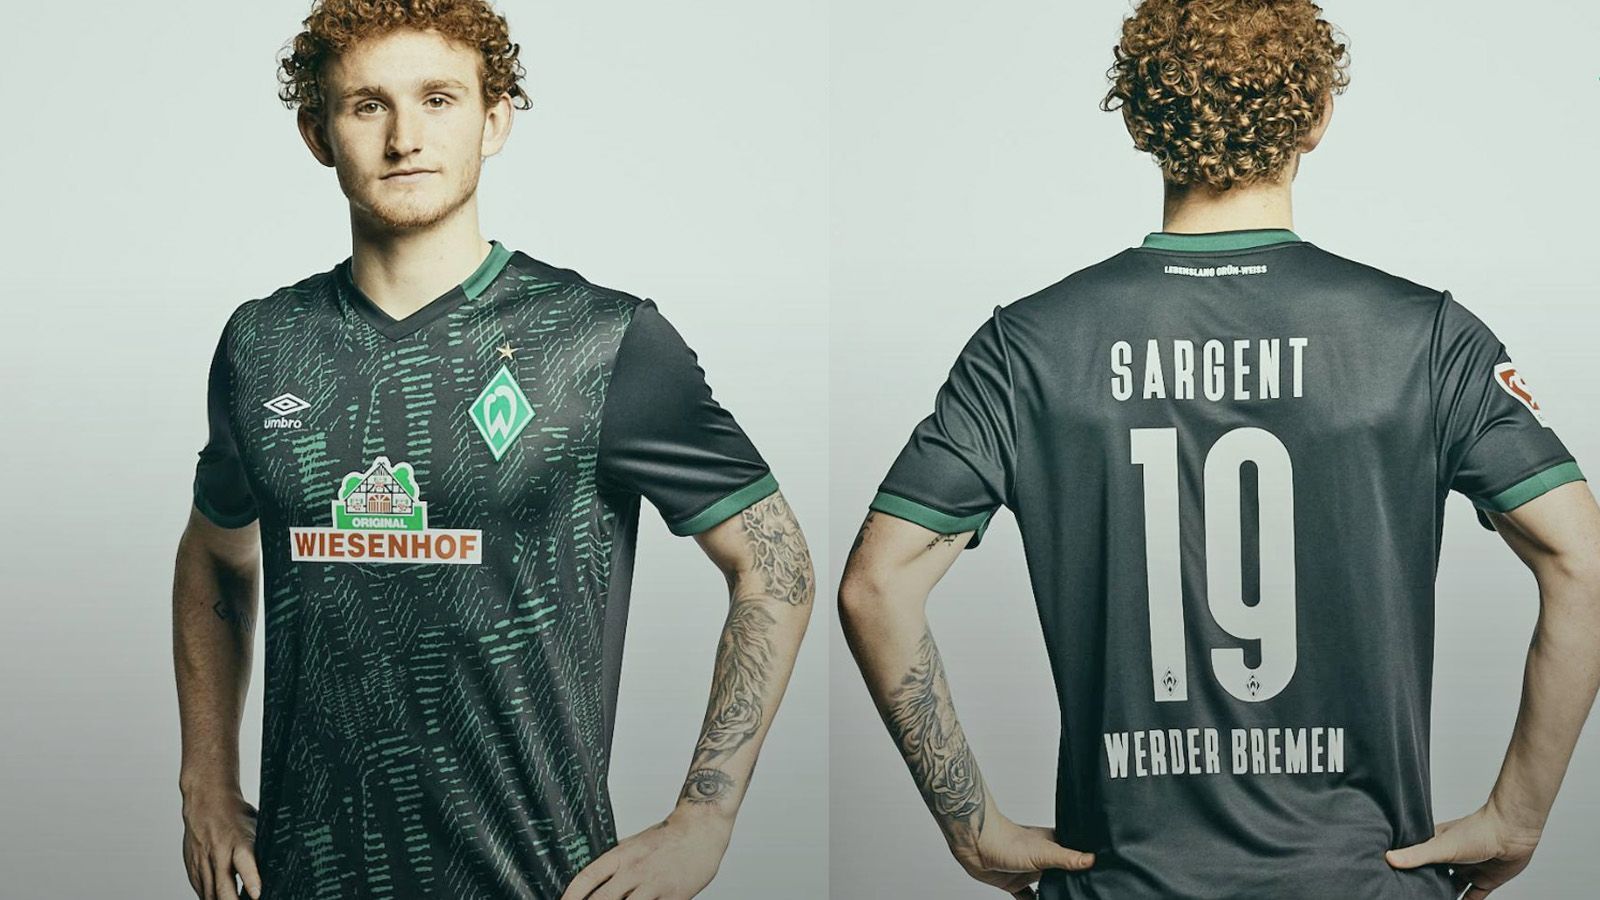 
                <strong>SV Werder Bremen (Ausweichtrikot)</strong><br>
                Nach dem traditionellen grünen Heimtrikot und einem Auswärtsjersey ganz in weiß hat der SV Werder Bremen auch das dritte neue Design für die Saison 2019/2020 präsentiert. Das Ausweichshirt der Weder-Profis bekommt eine dunkelgrüne Musterung, die leicht an einen "Dschungel"- oder "Schlangen"-Look erinnert. 
              